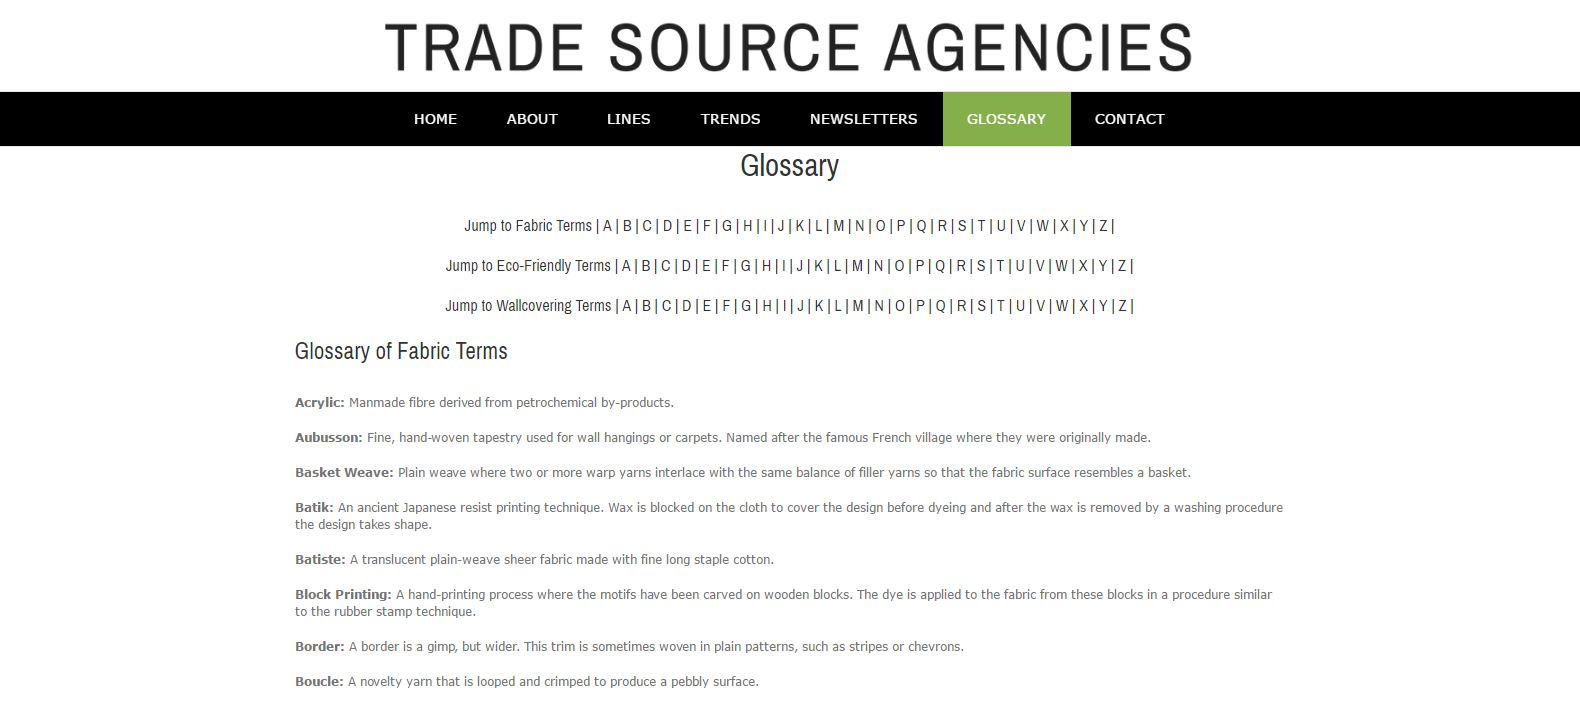 Trade Source Agencies